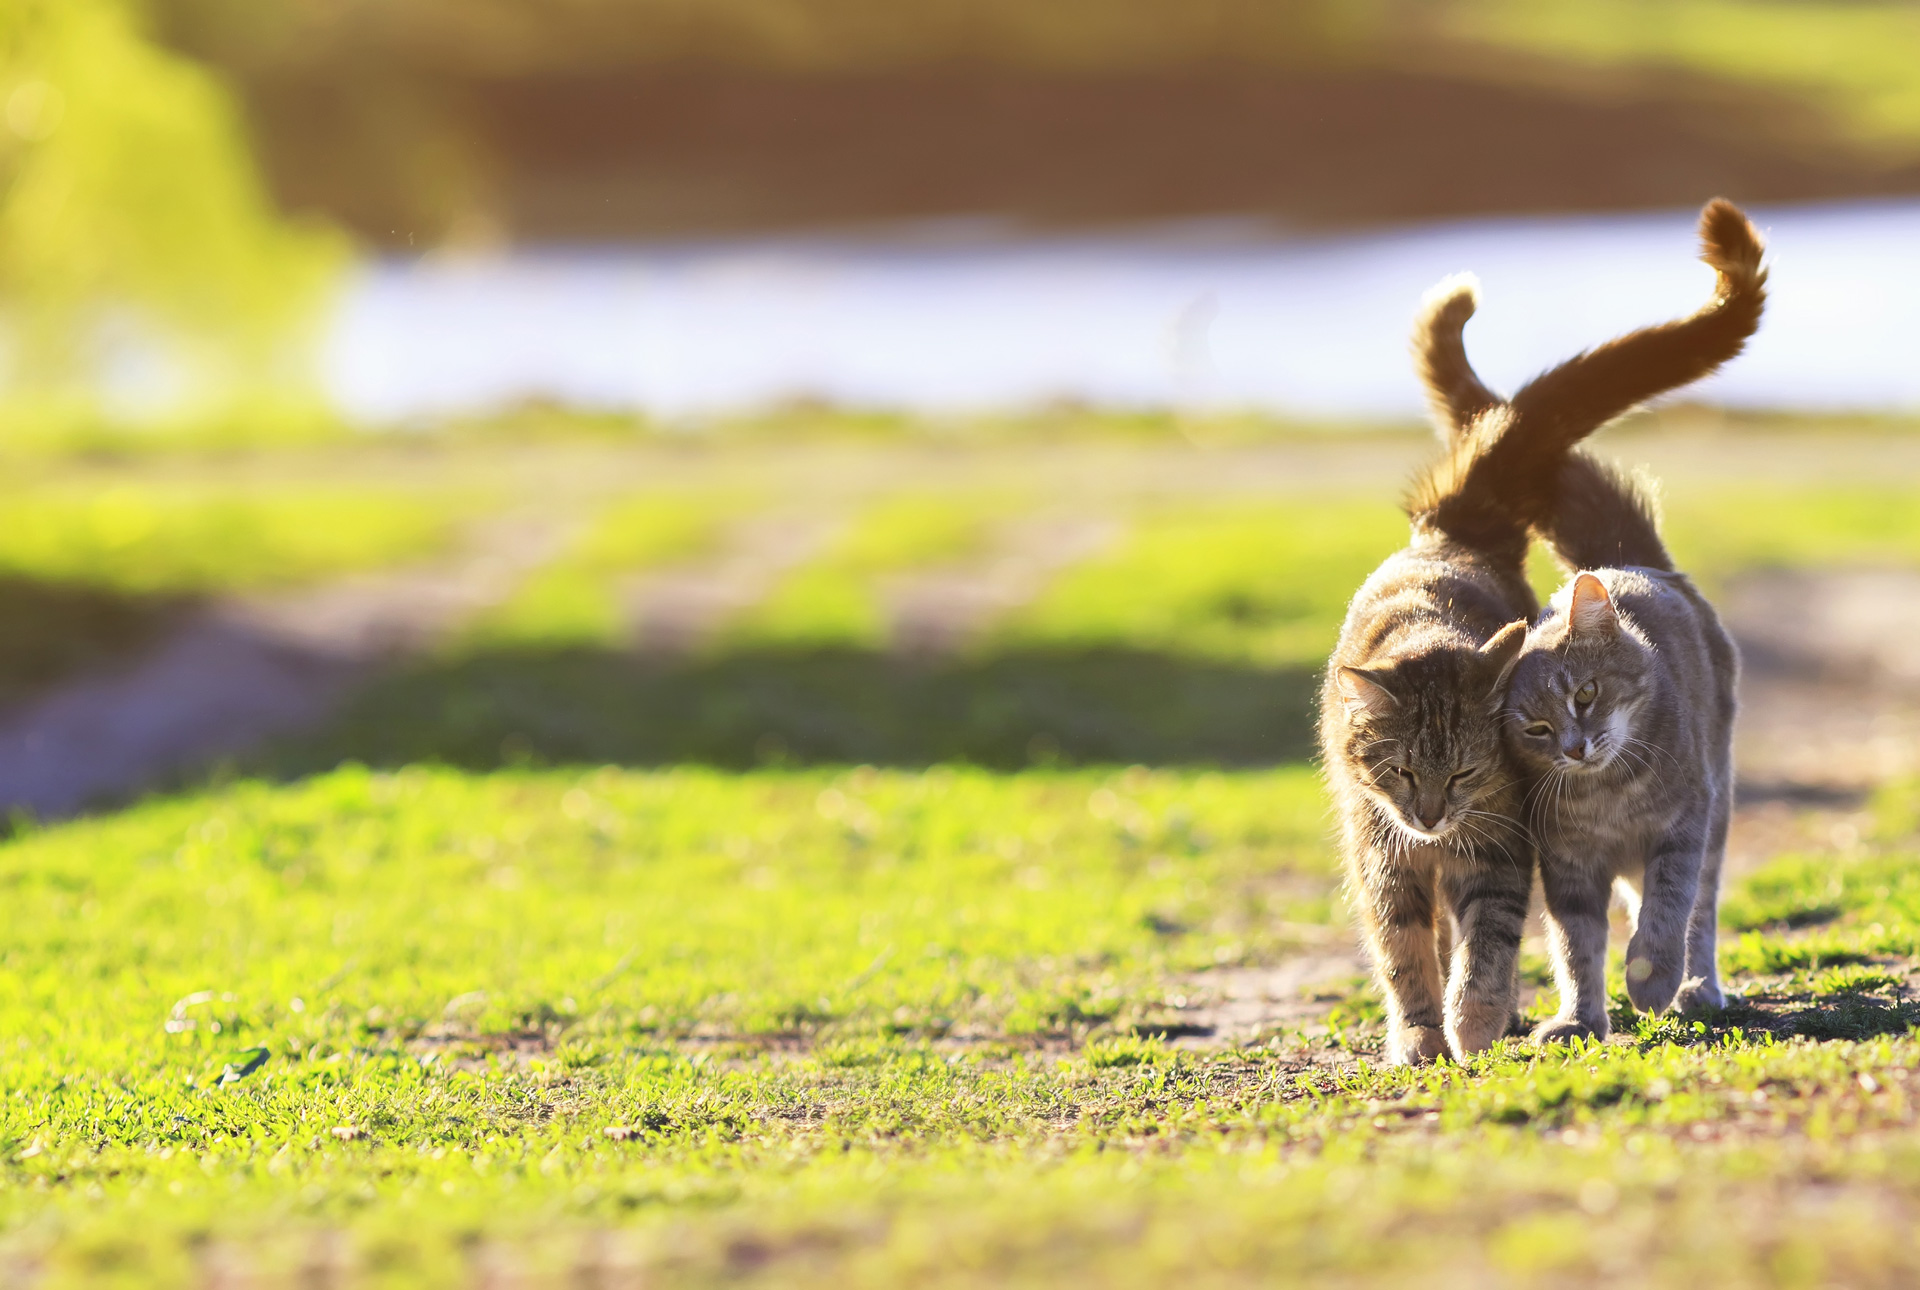 Two Cute Striped Kitten Walking On Green Grass